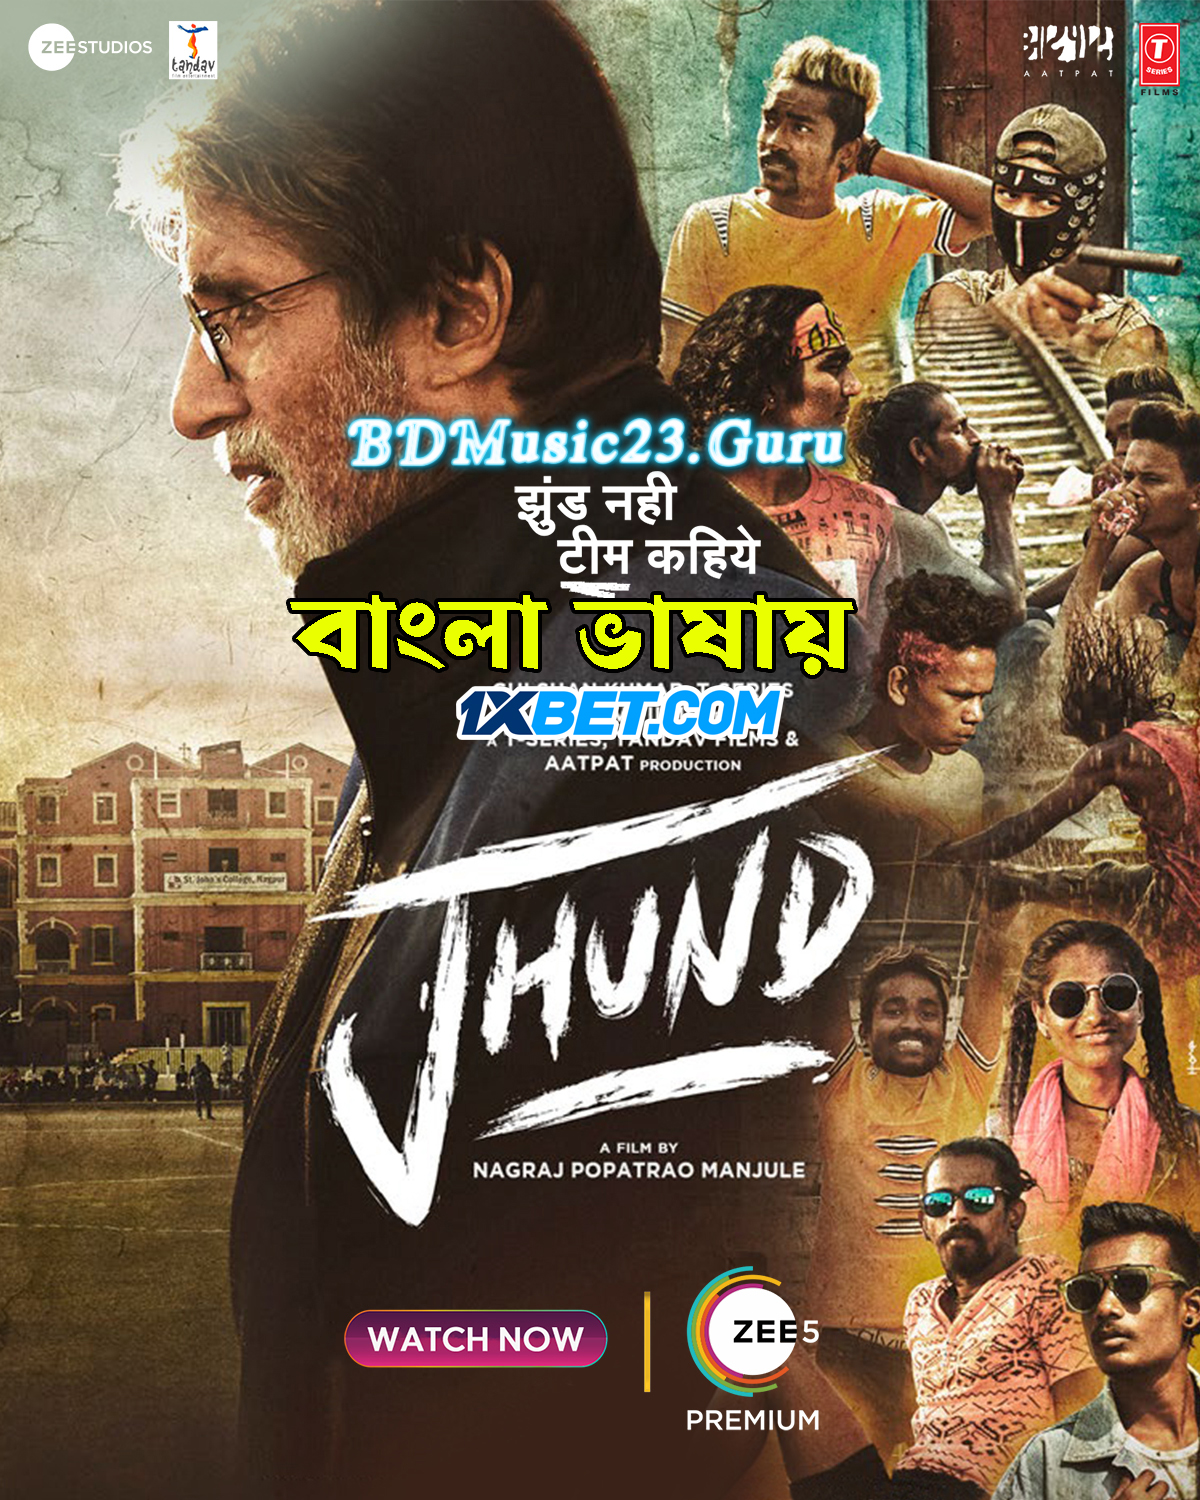 Jhund (2022) Bengali Dubbed (VO) [1XBET] 720p WEBRip Online Stream